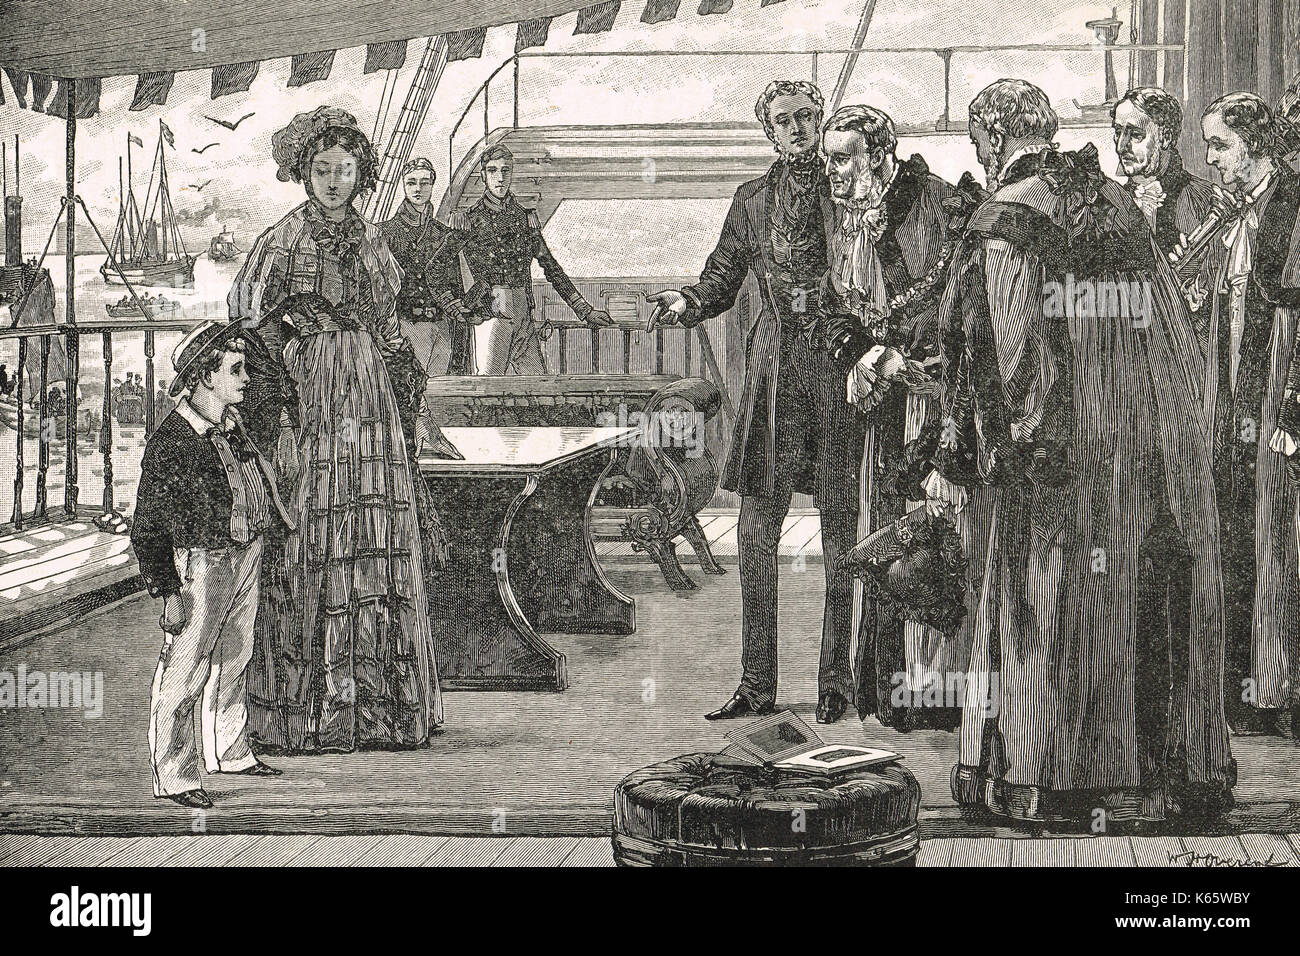 La reine Victoria avec Albert, Prince de Galles (futur Édouard VII), en cours d'introduction aux dignitaires municipaux de penryn, circa 1840 Banque D'Images